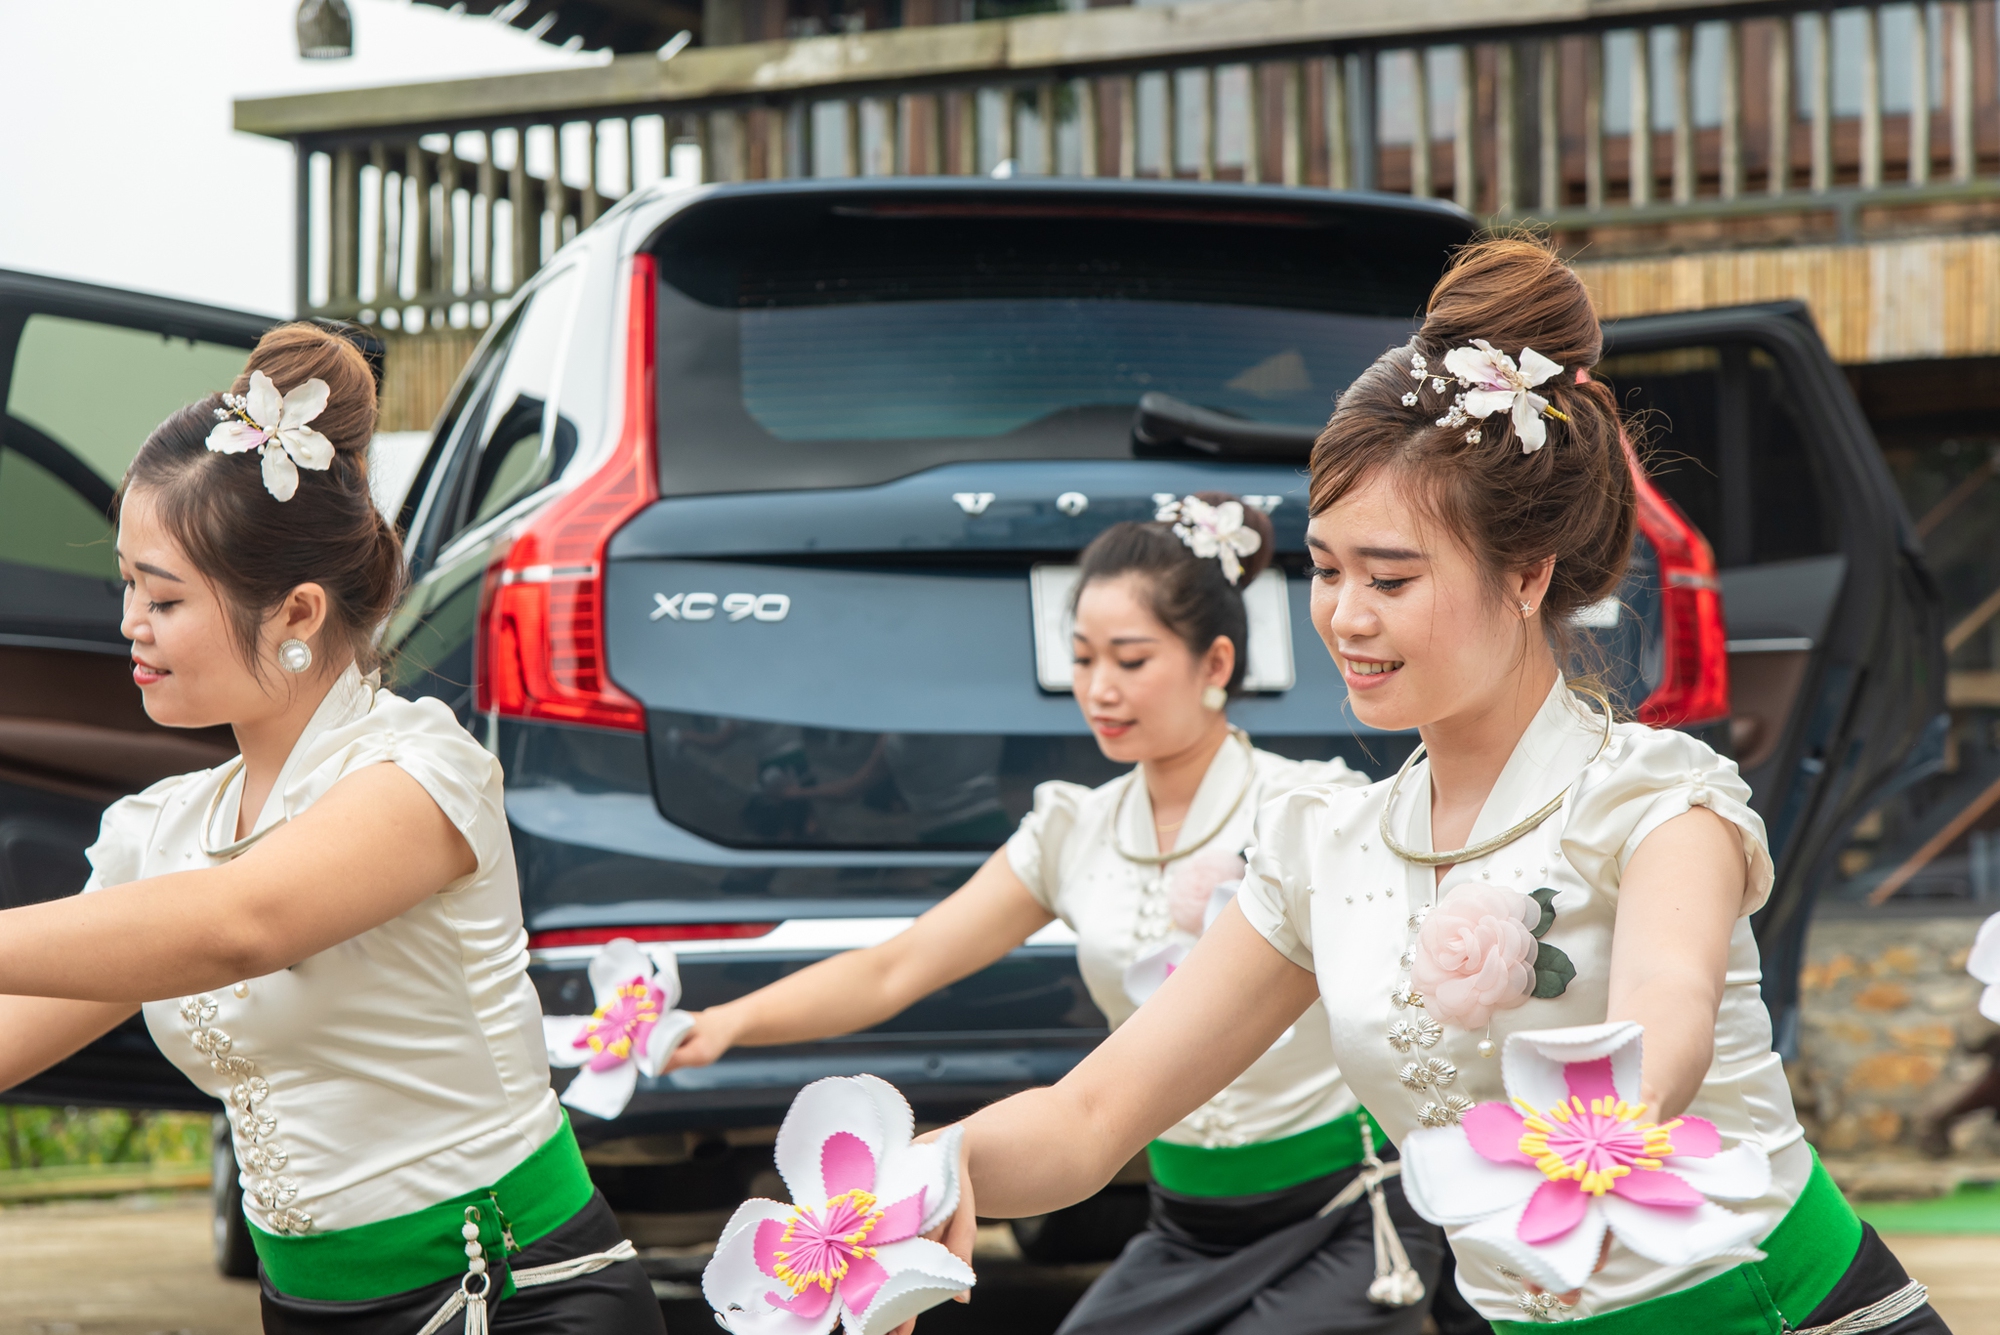 Nhóm nữ từng tham gia múa xòe Thái kỷ lục: ‘Nhảy theo nhạc phát từ loa xe Volvo là trải nghiệm không bao giờ quên’ - Ảnh 3.